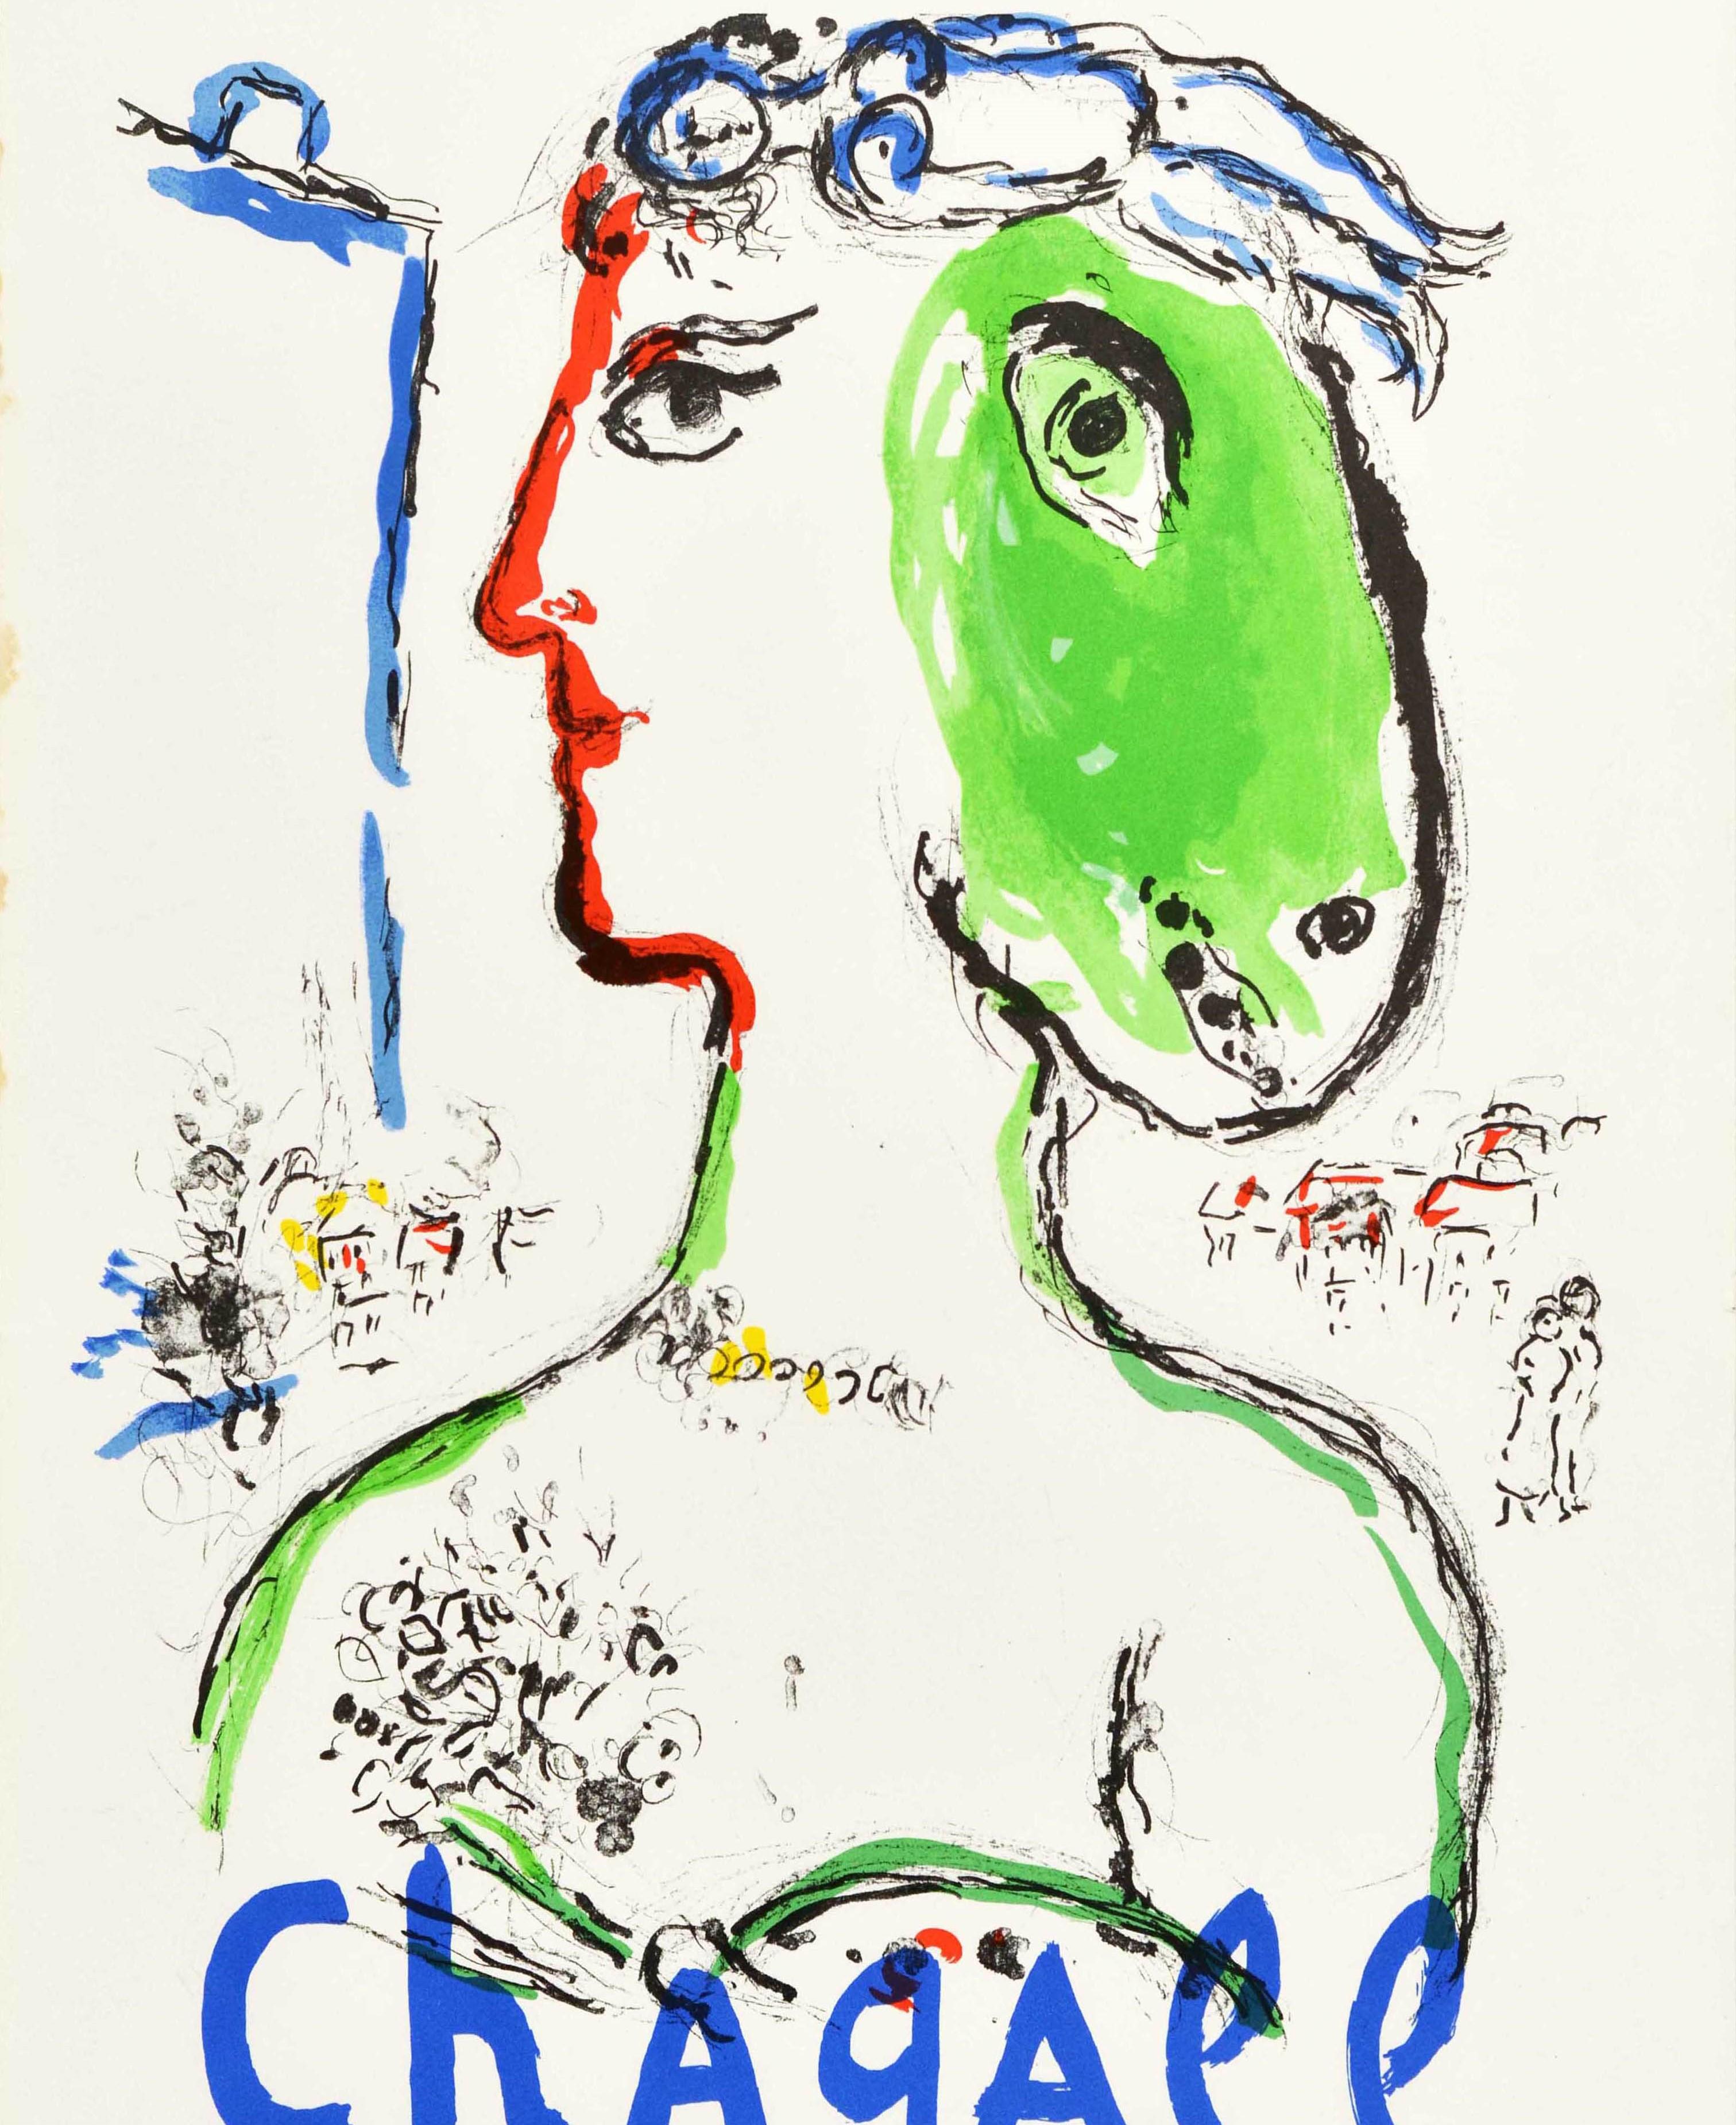 Originalplakat für eine Kunstausstellung im Vintage-Stil - Chagall Galerie Maeght Paris - mit der Darstellung des Künstlers Marc Chagall (1887-1985) mit dem Titel 